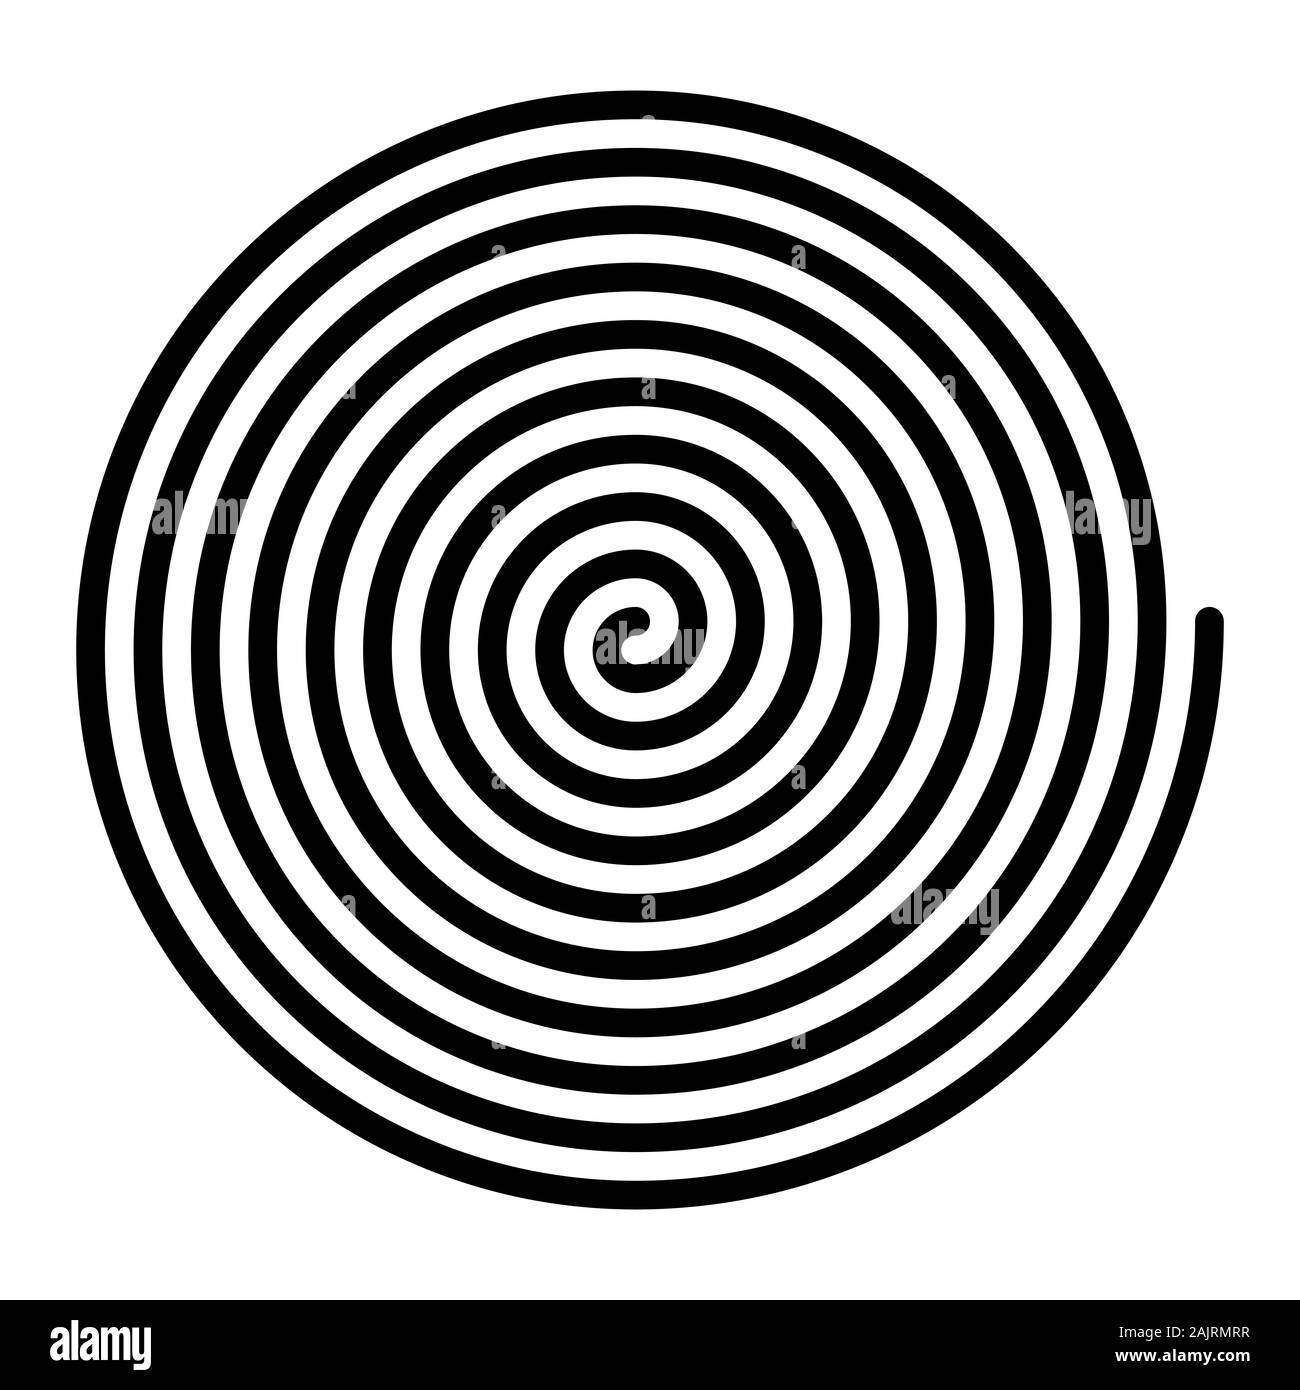 Große lineare Spirale. Archimedische Spirale der Farbe schwarz mit 10 Drehungen eines Arms einer arithmetischen Spirale, Drehen mit konstanter Winkelgeschwindigkeit. Stockfoto